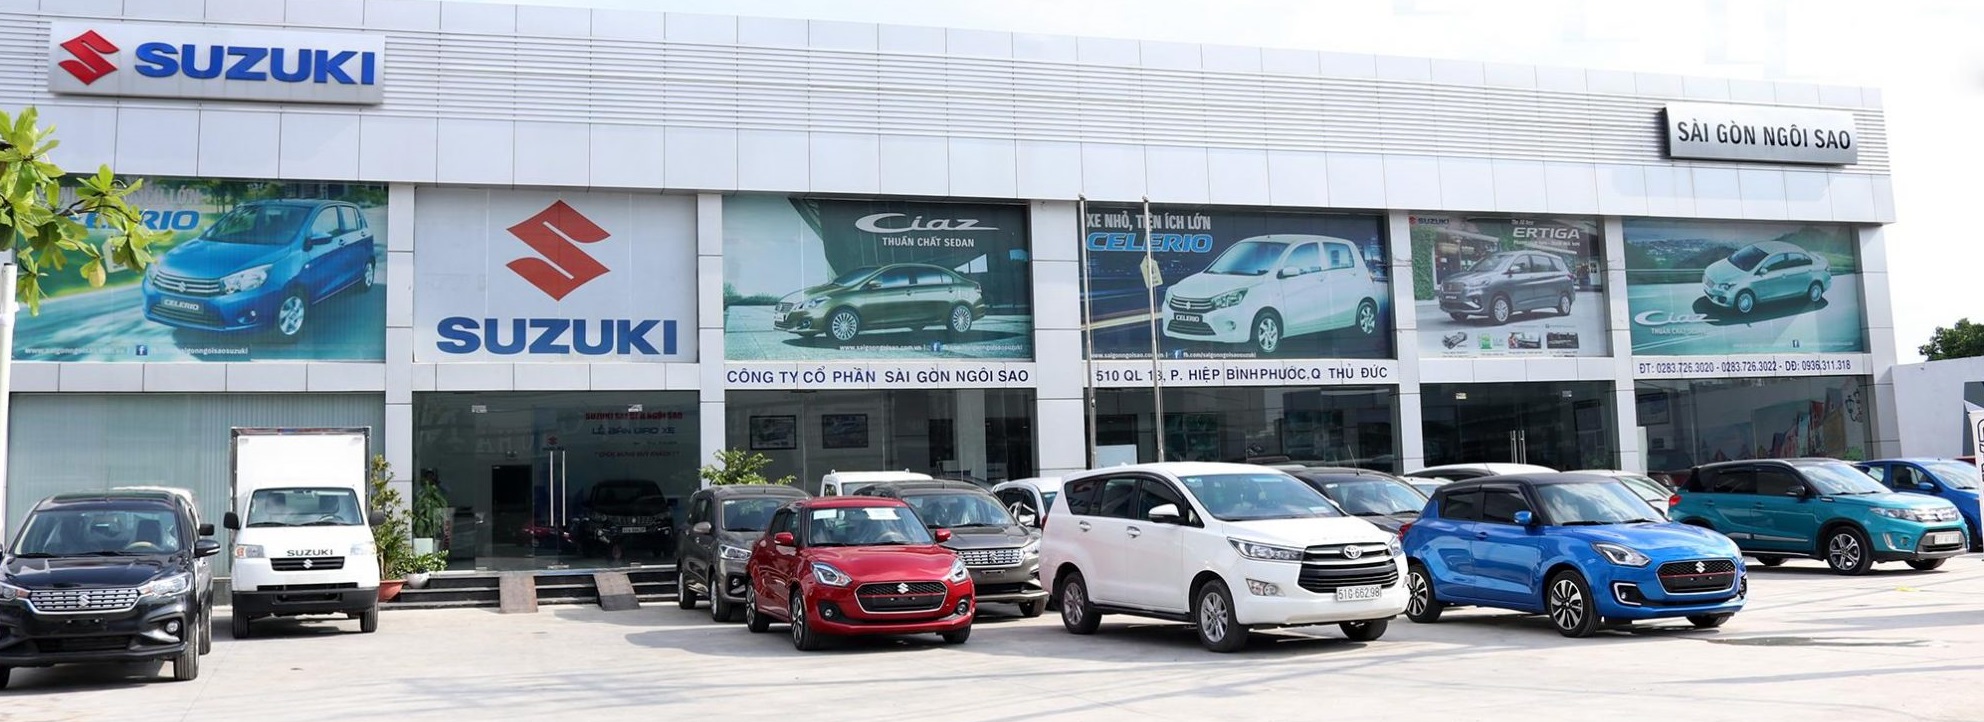 Suzuki Ciaz 2021 Vị thế doanh nhân hiện đại Giá: 529.000.000 VNĐ